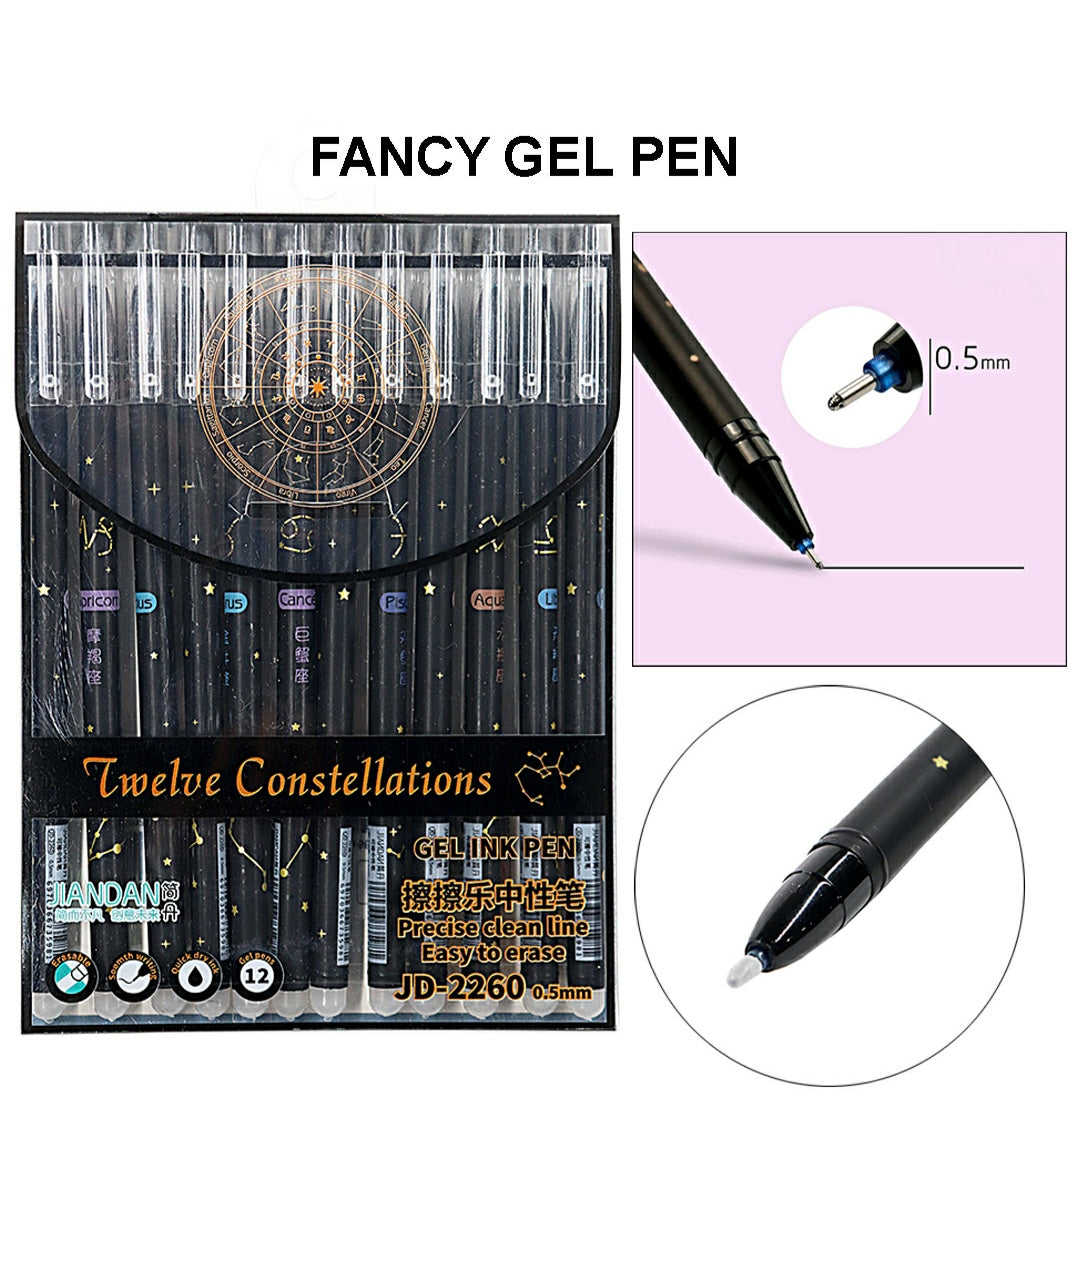 Fancy Gel Pen Jd-2260 | INKARTO